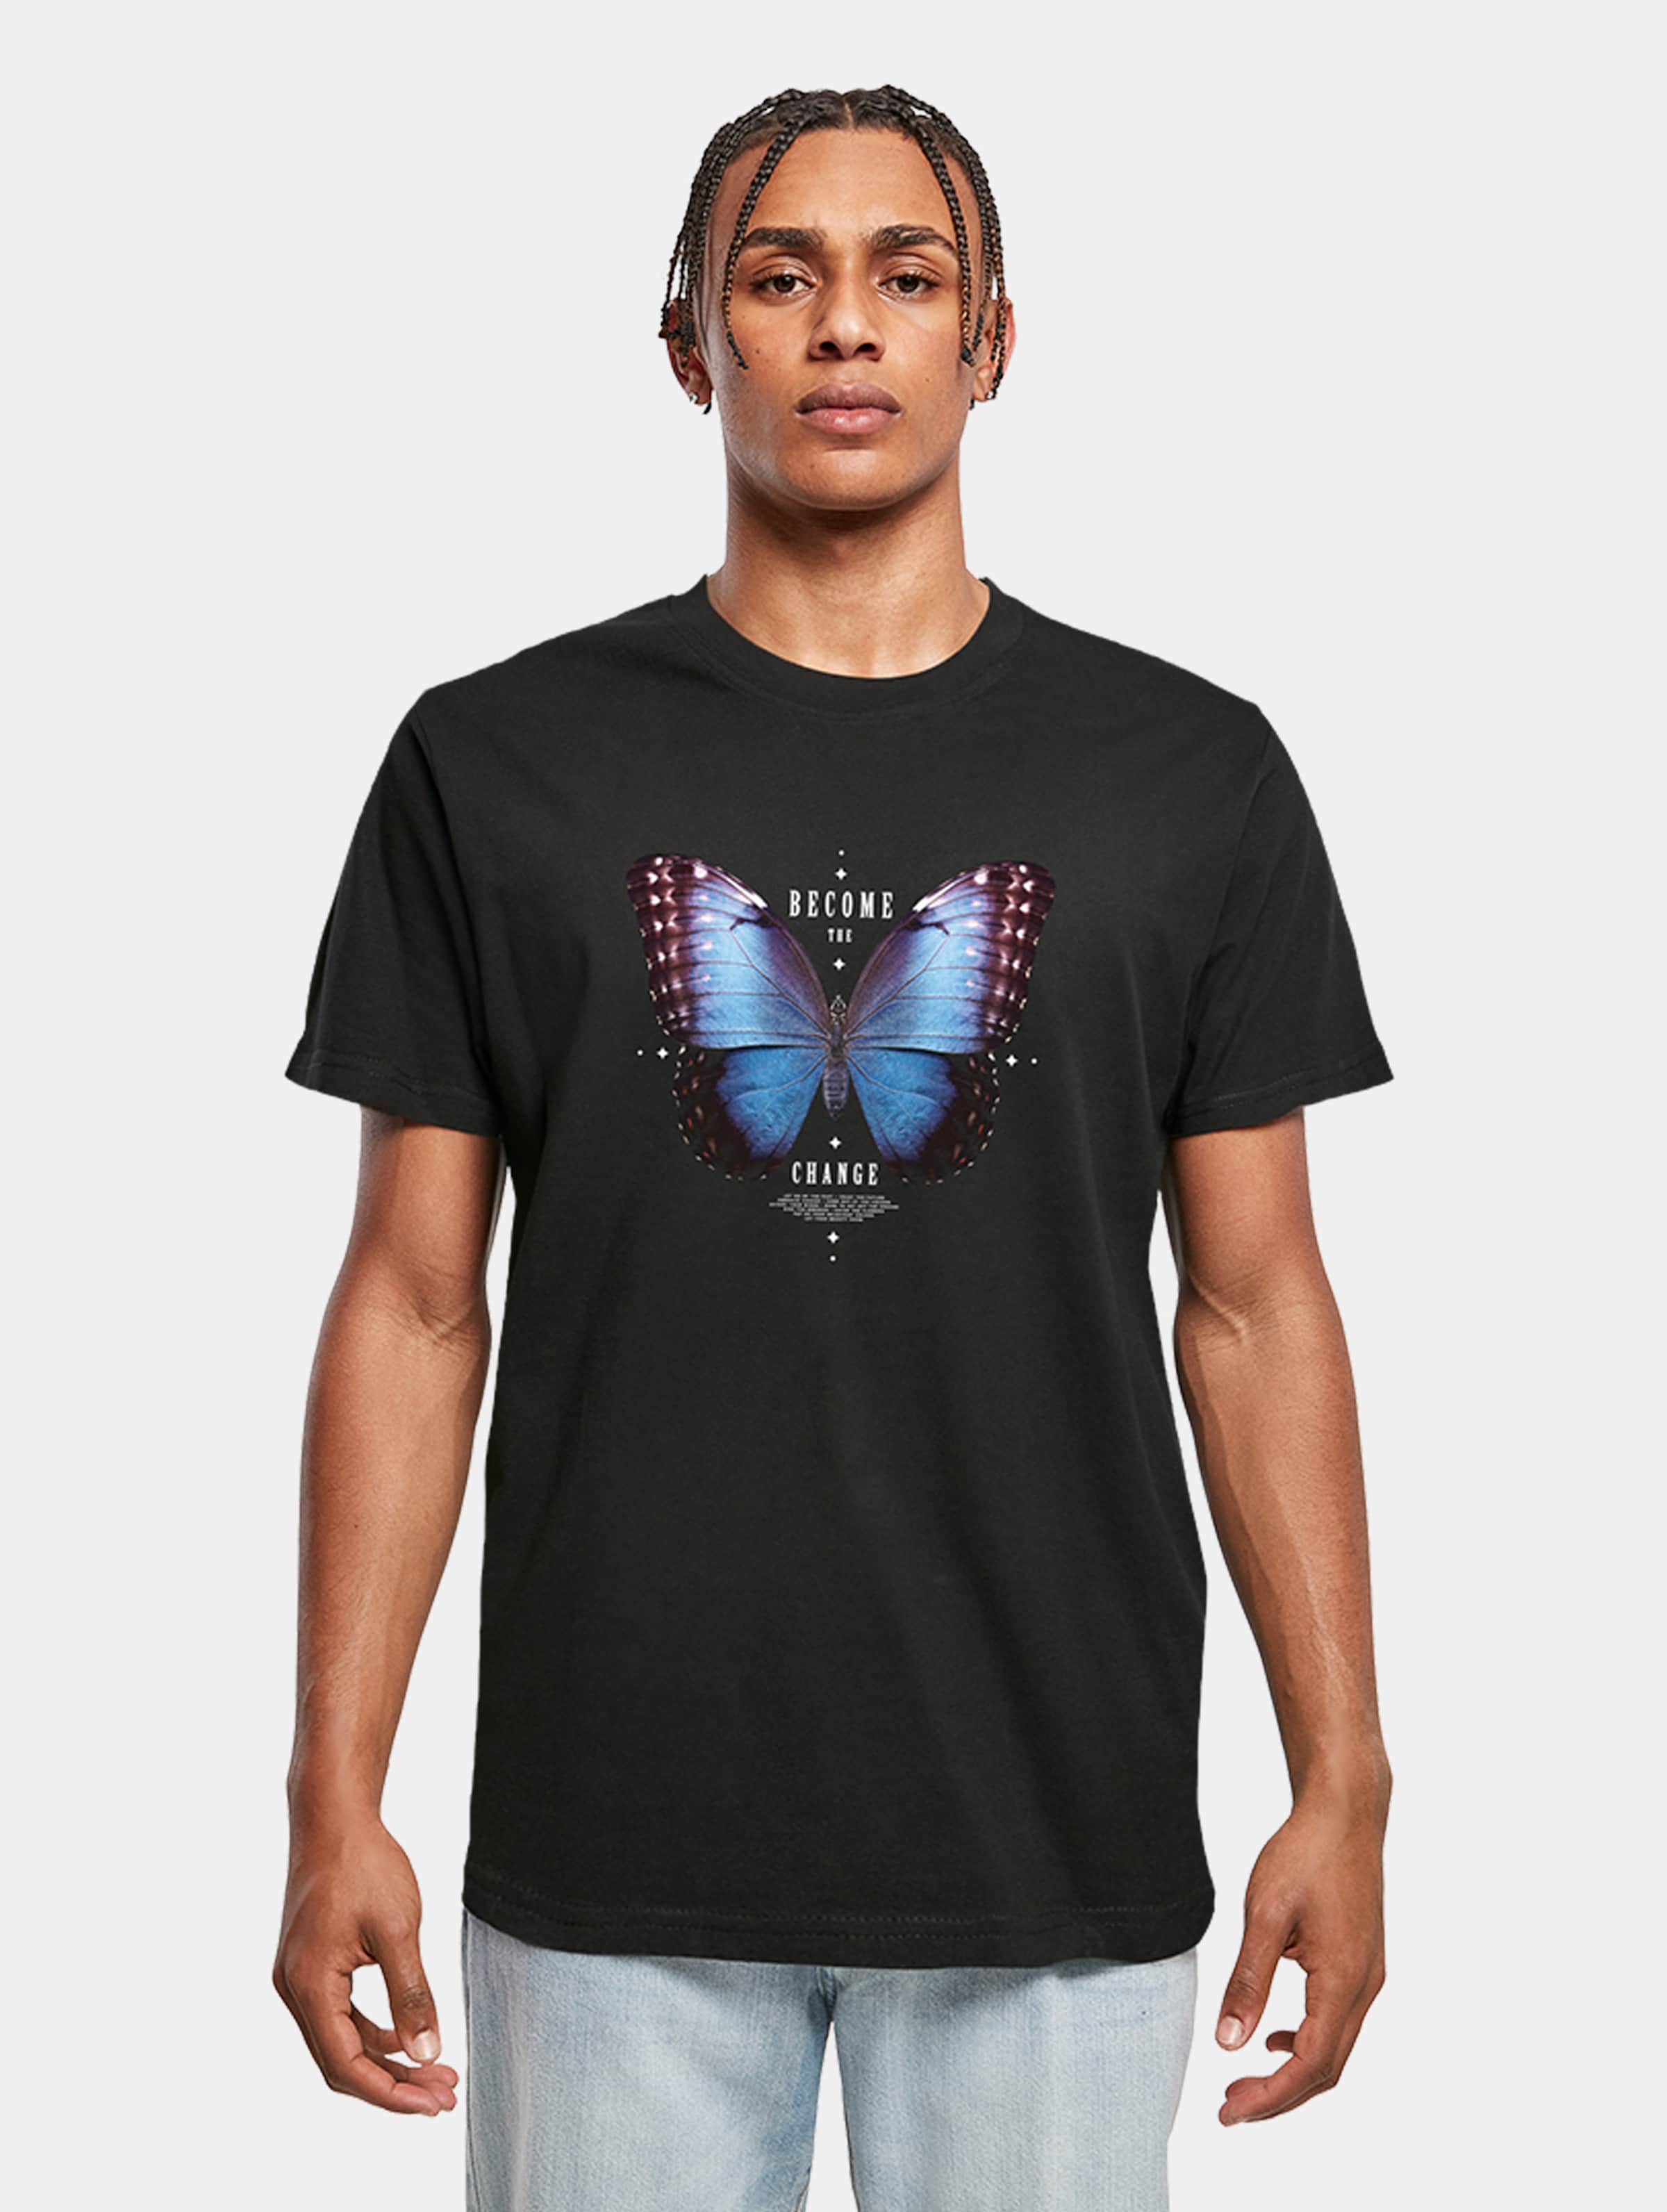 Mister Tee - Become the Change Butterfly Heren T-shirt - L - Zwart